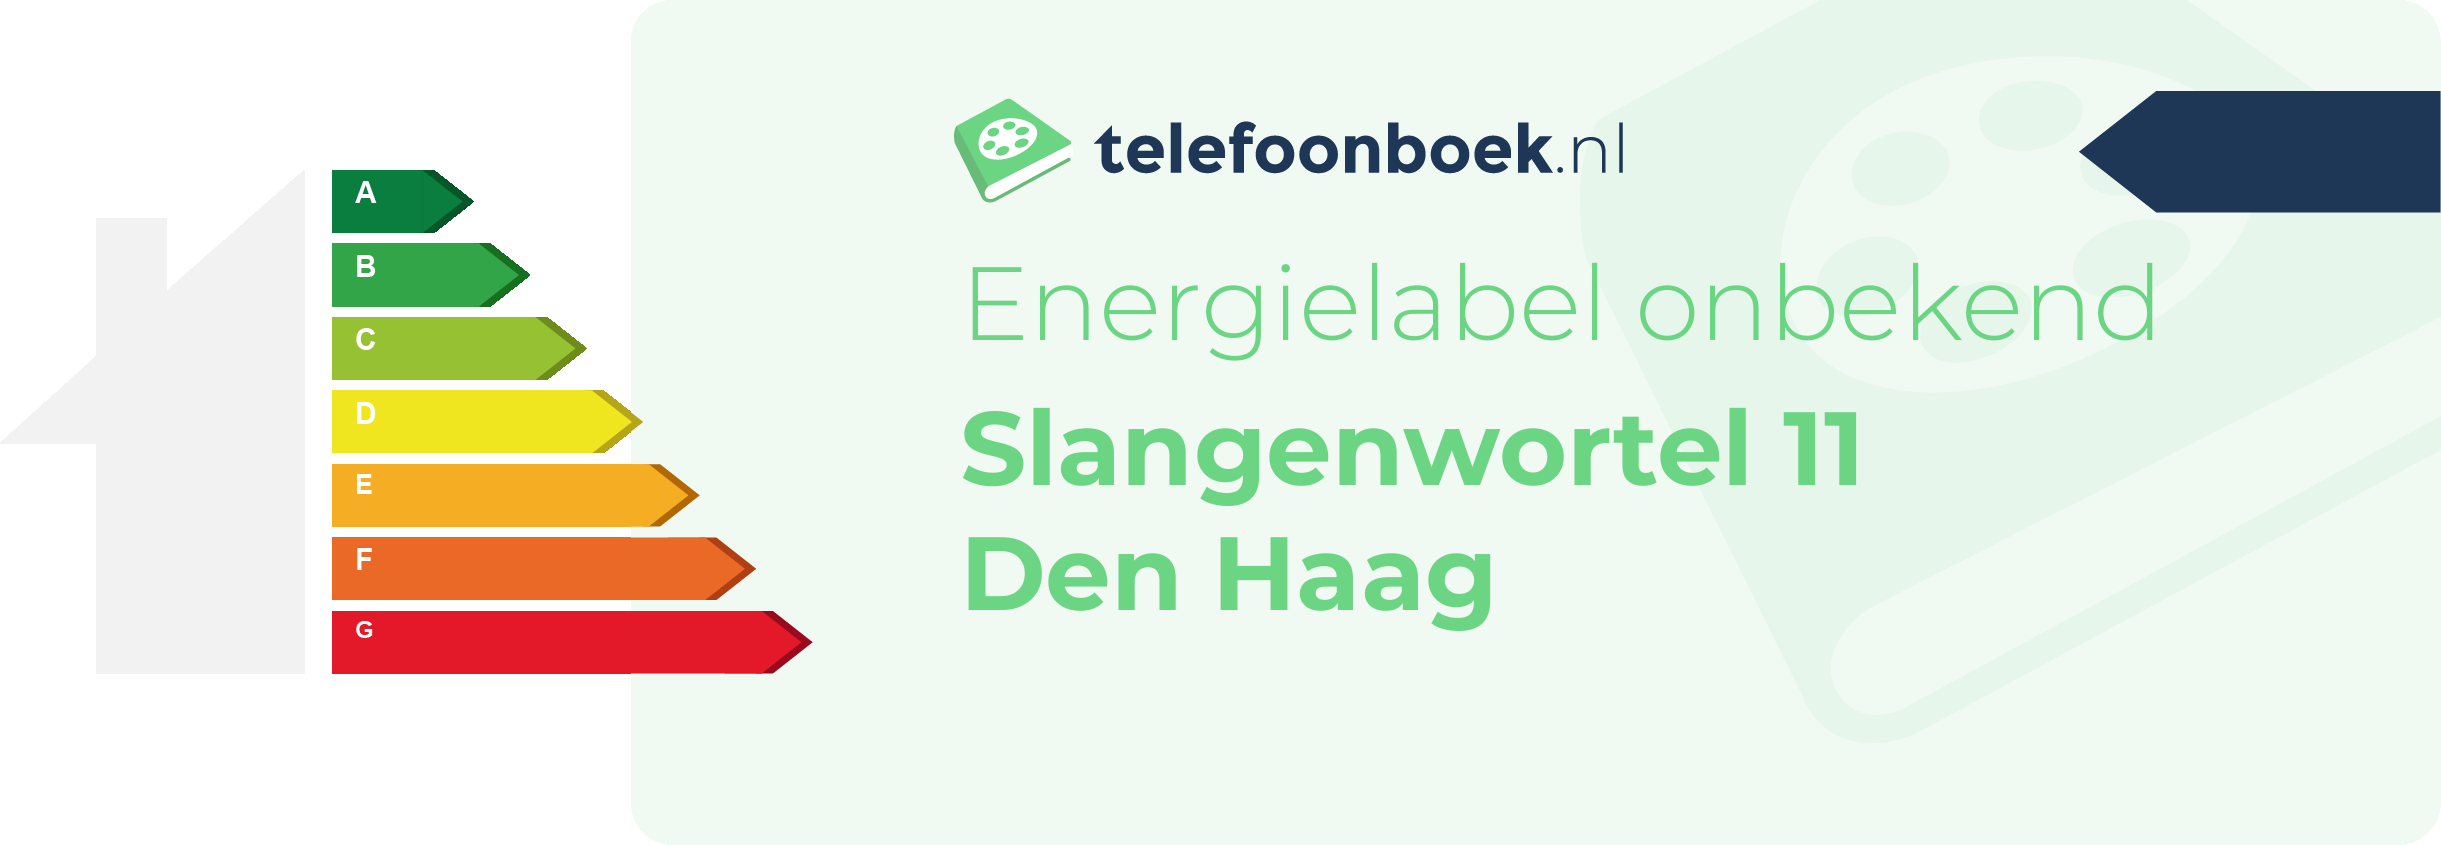 Energielabel Slangenwortel 11 Den Haag